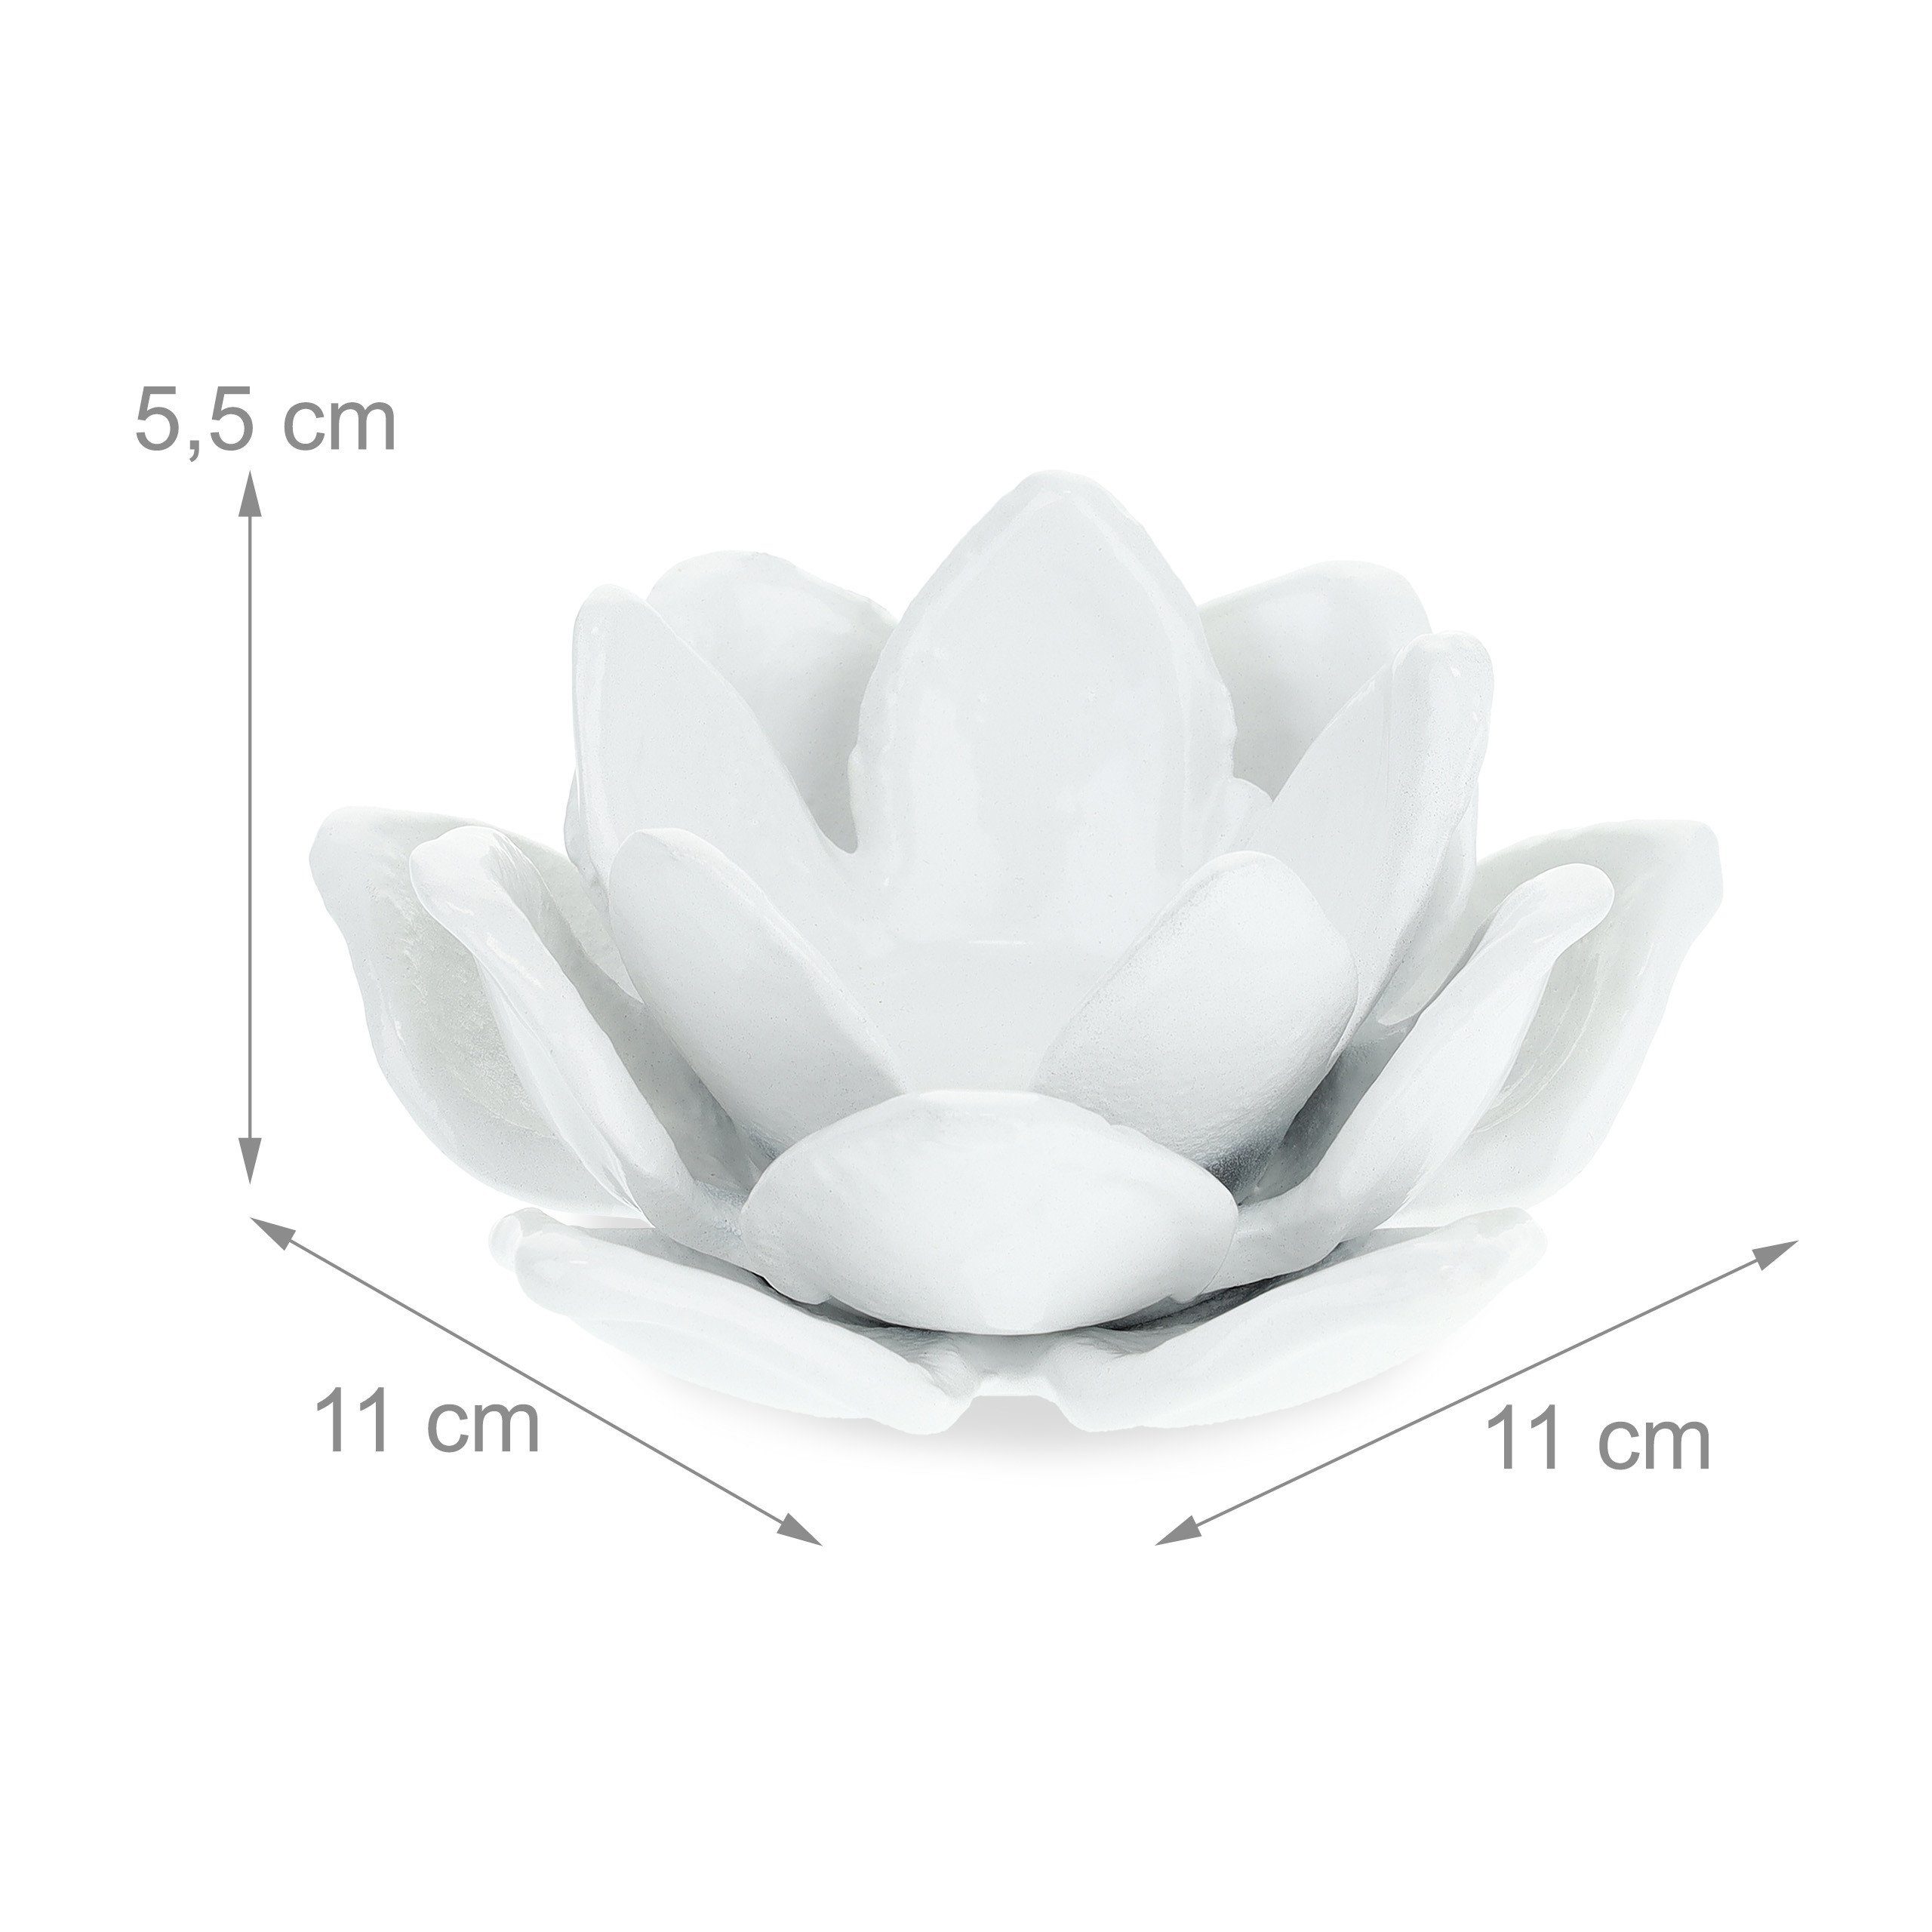 Set Weiß Teelichthalter Lotusform, 2er relaxdays Teelichthalter in